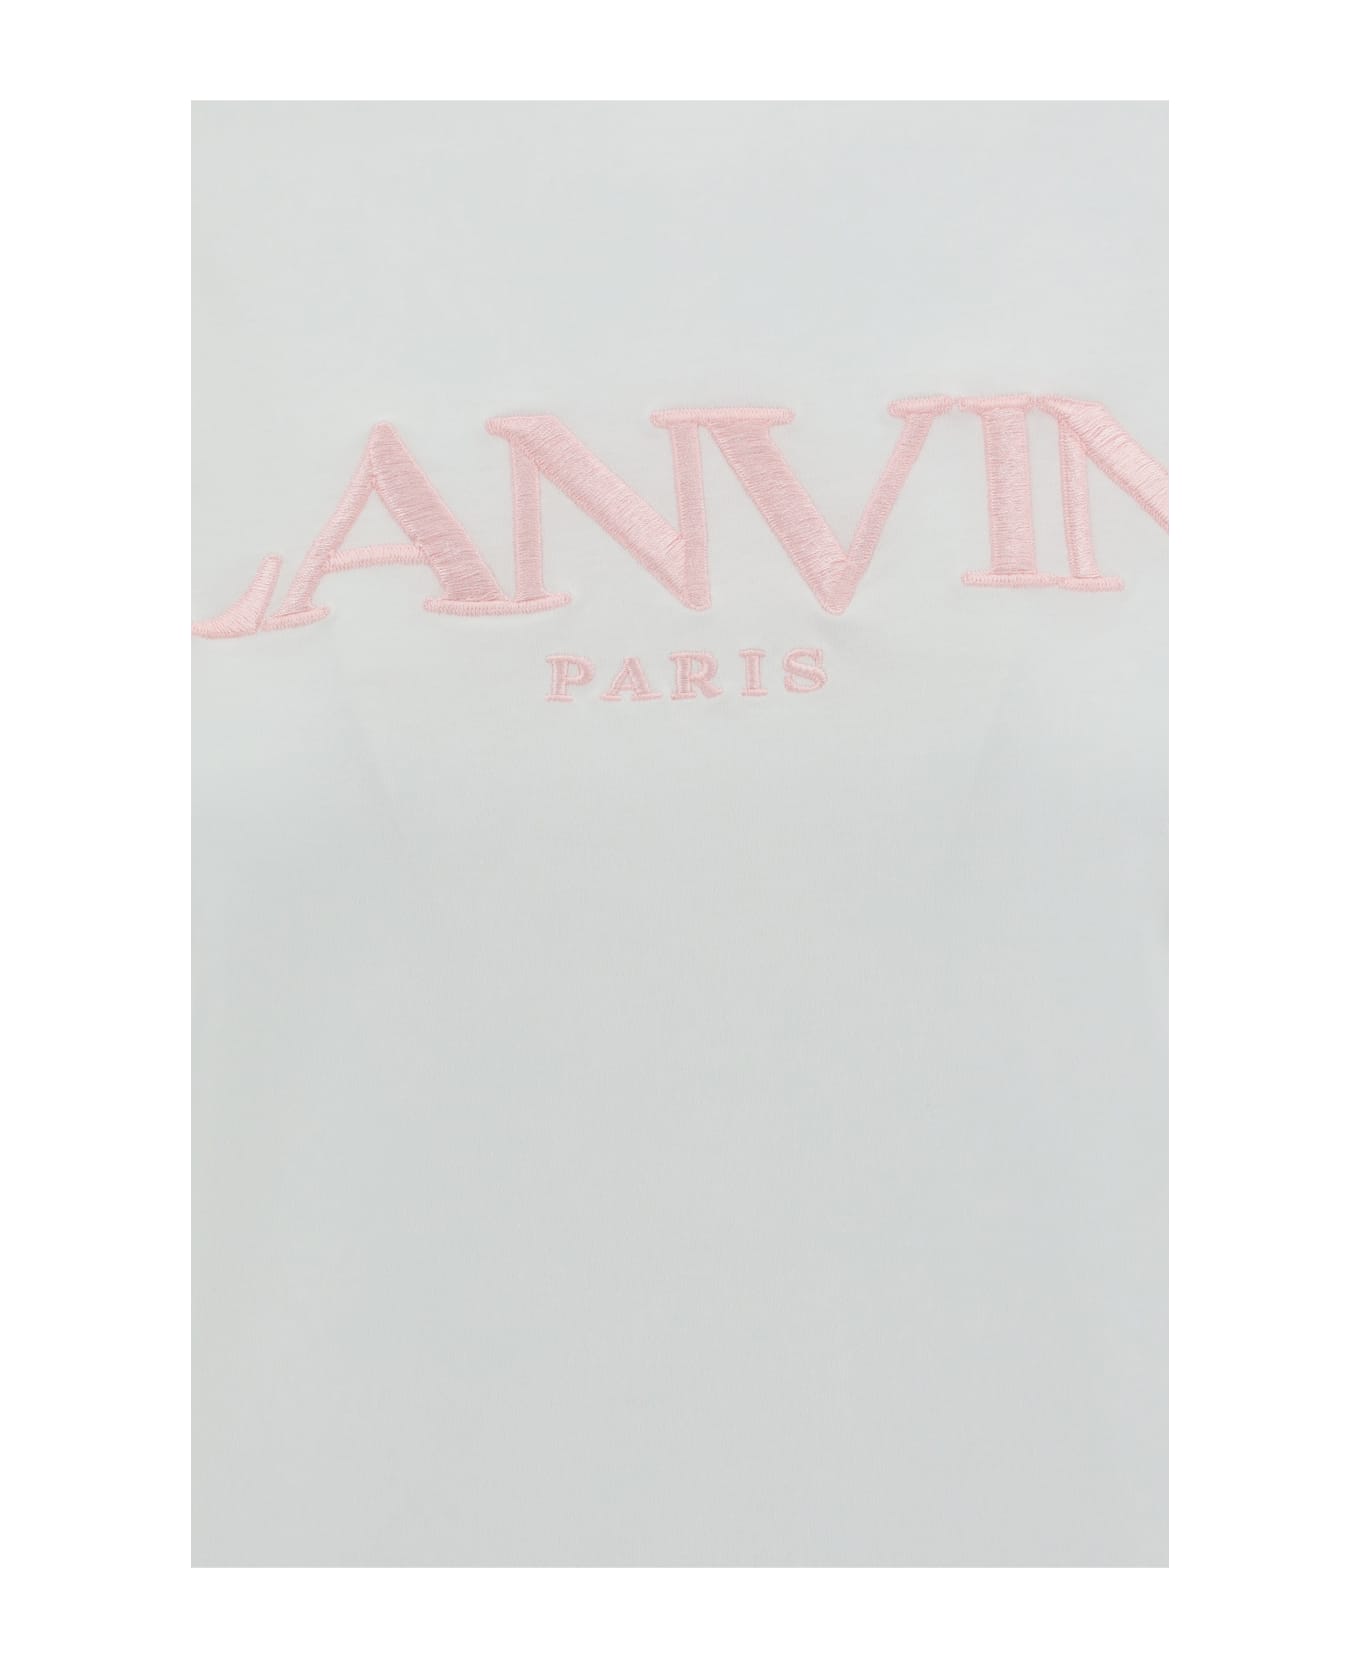 Lanvin T-shirt - Optic White